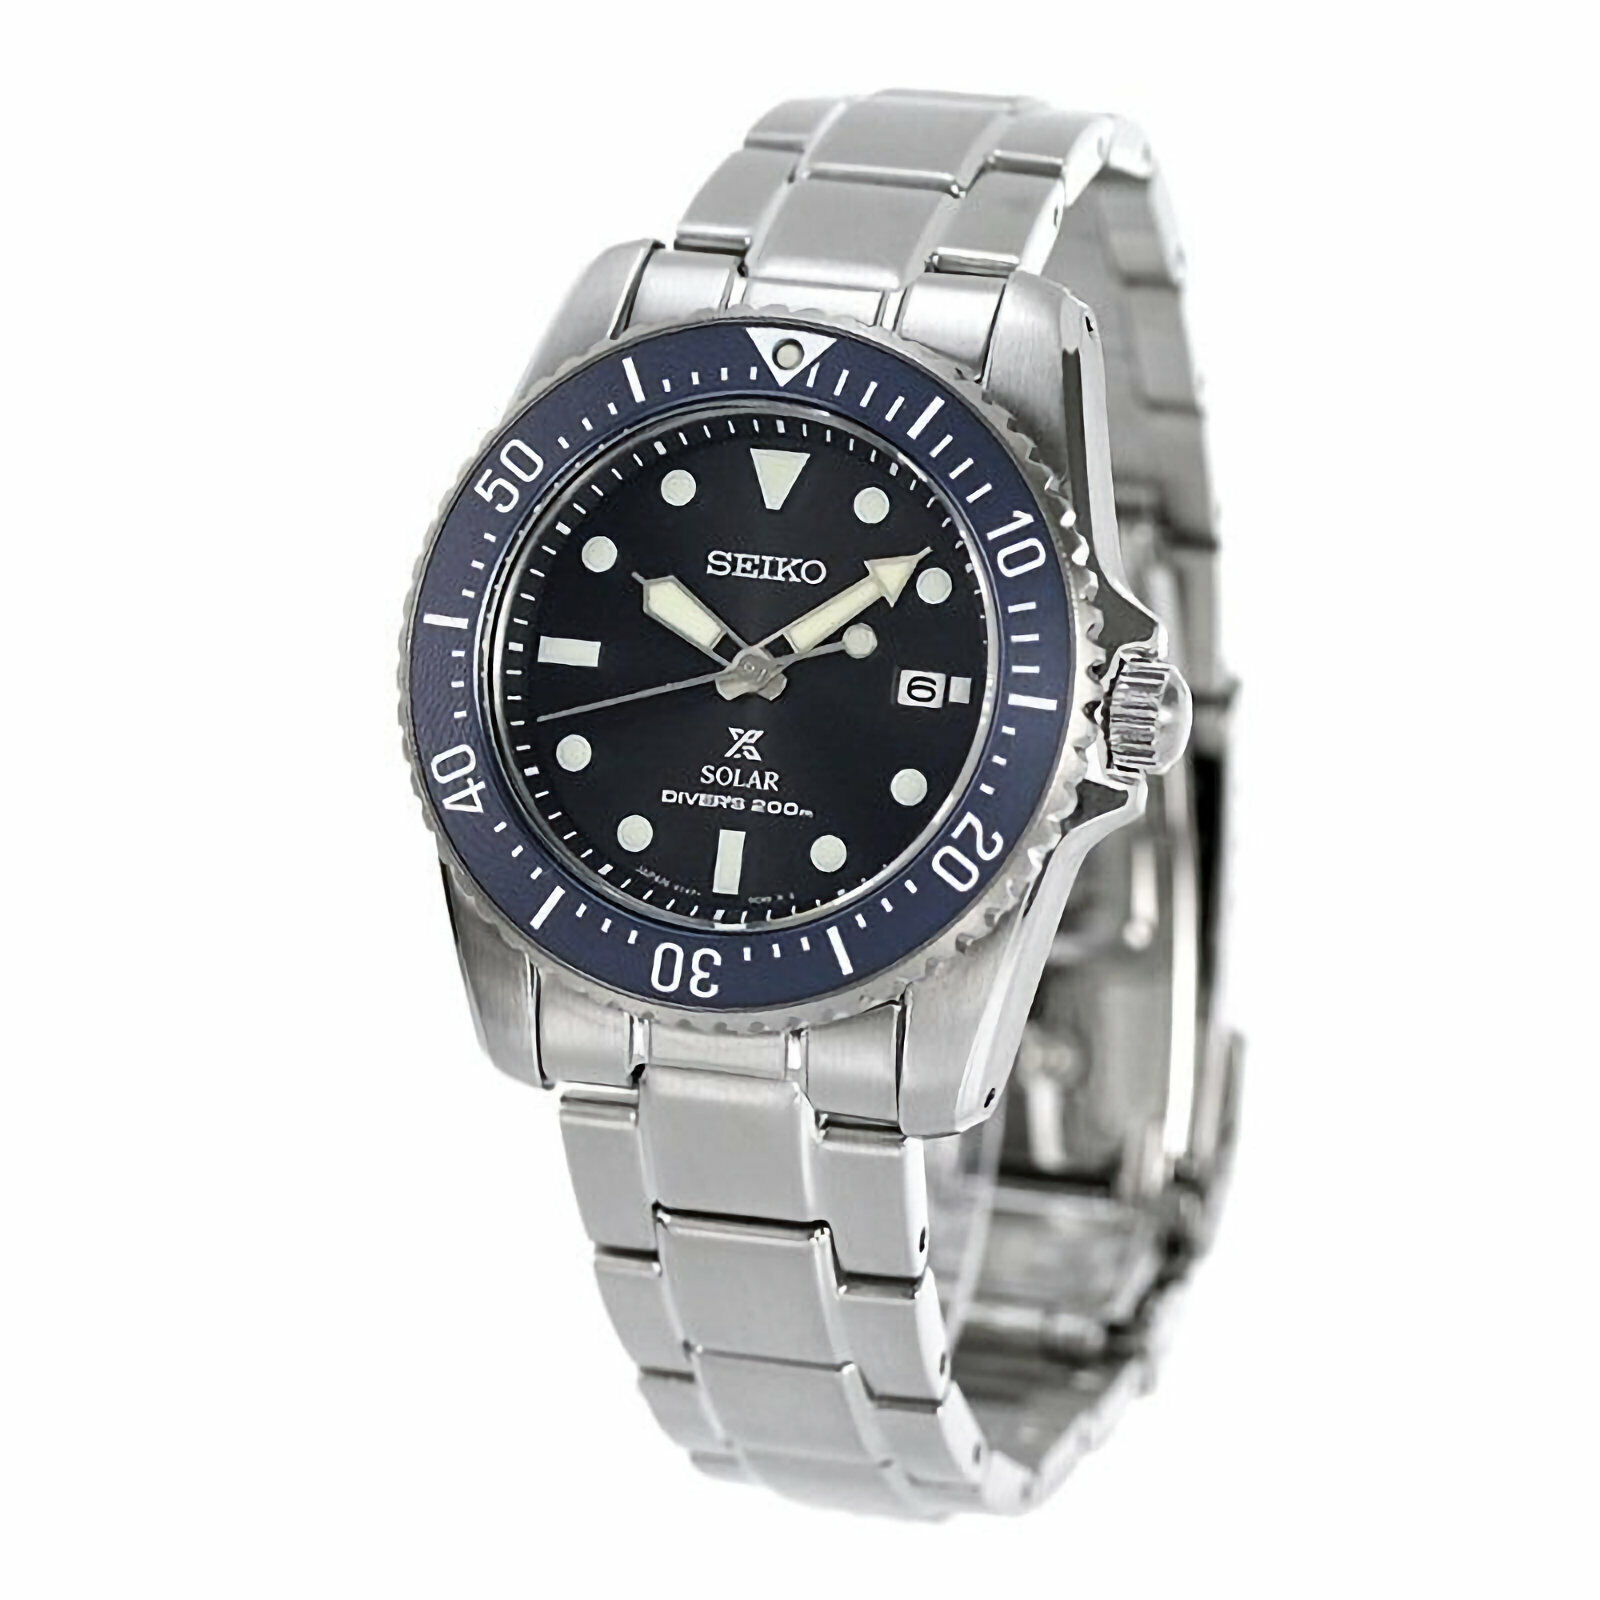 SEIKO Prospex SNE569P1 Compact Solar Diver Scuba 200M Black Dial Watch  WARRANTY | eBay